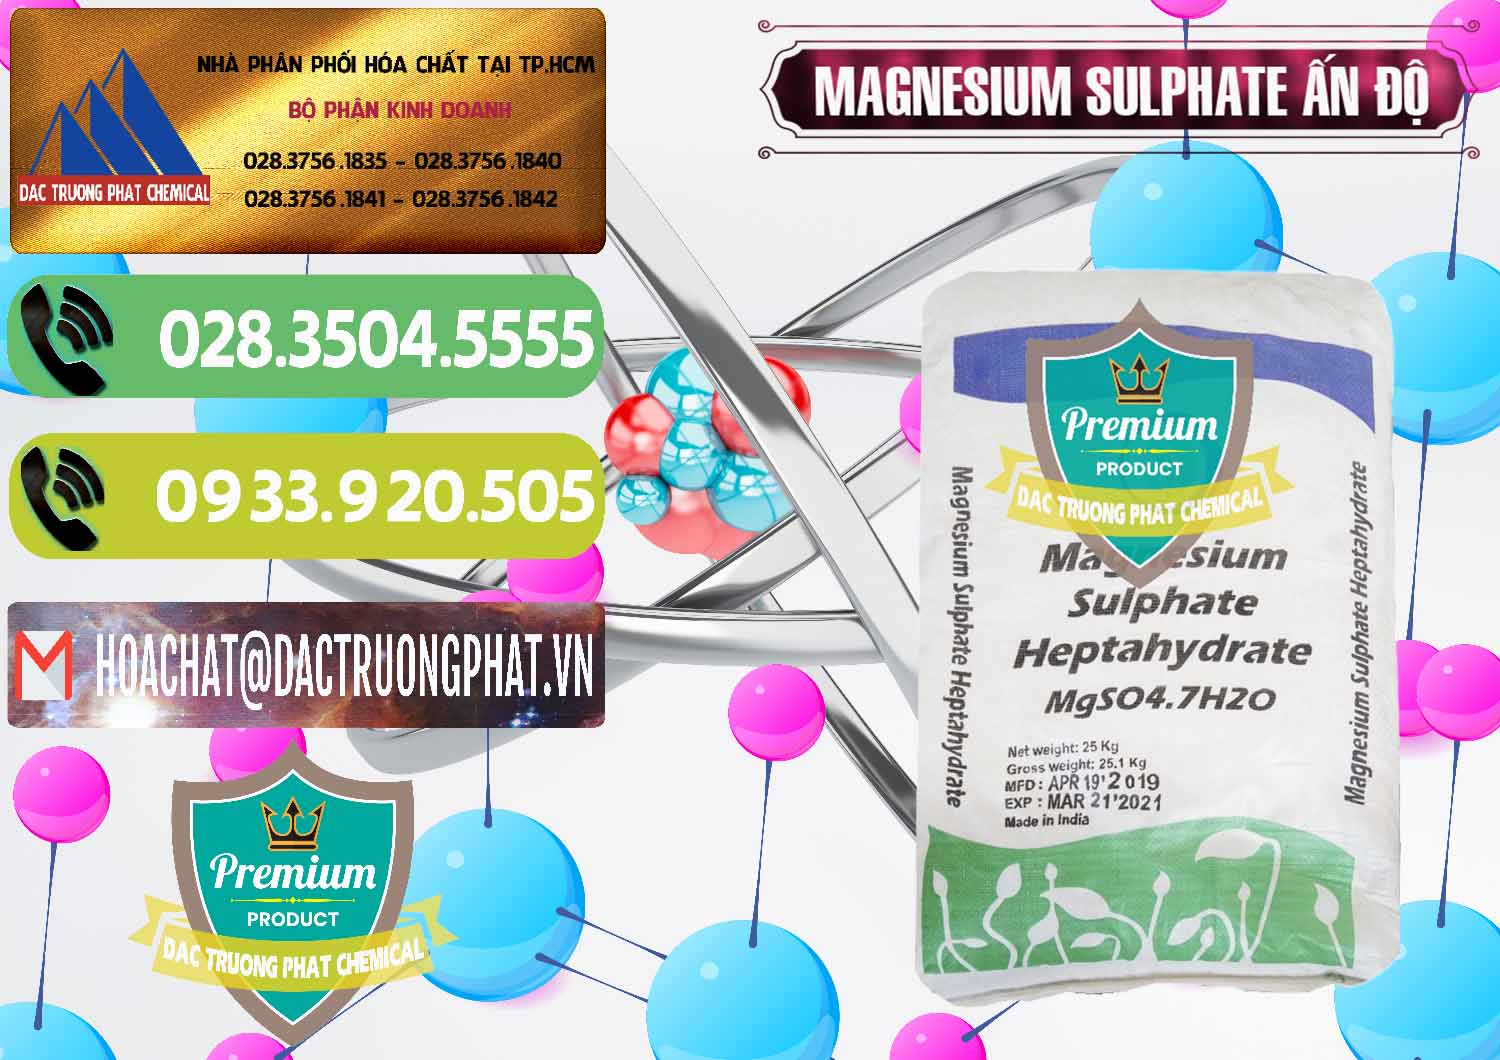 Nơi chuyên bán ( cung ứng ) MGSO4.7H2O – Magnesium Sulphate Heptahydrate Ấn Độ India - 0362 - Công ty phân phối & cung cấp hóa chất tại TP.HCM - hoachatmientay.vn